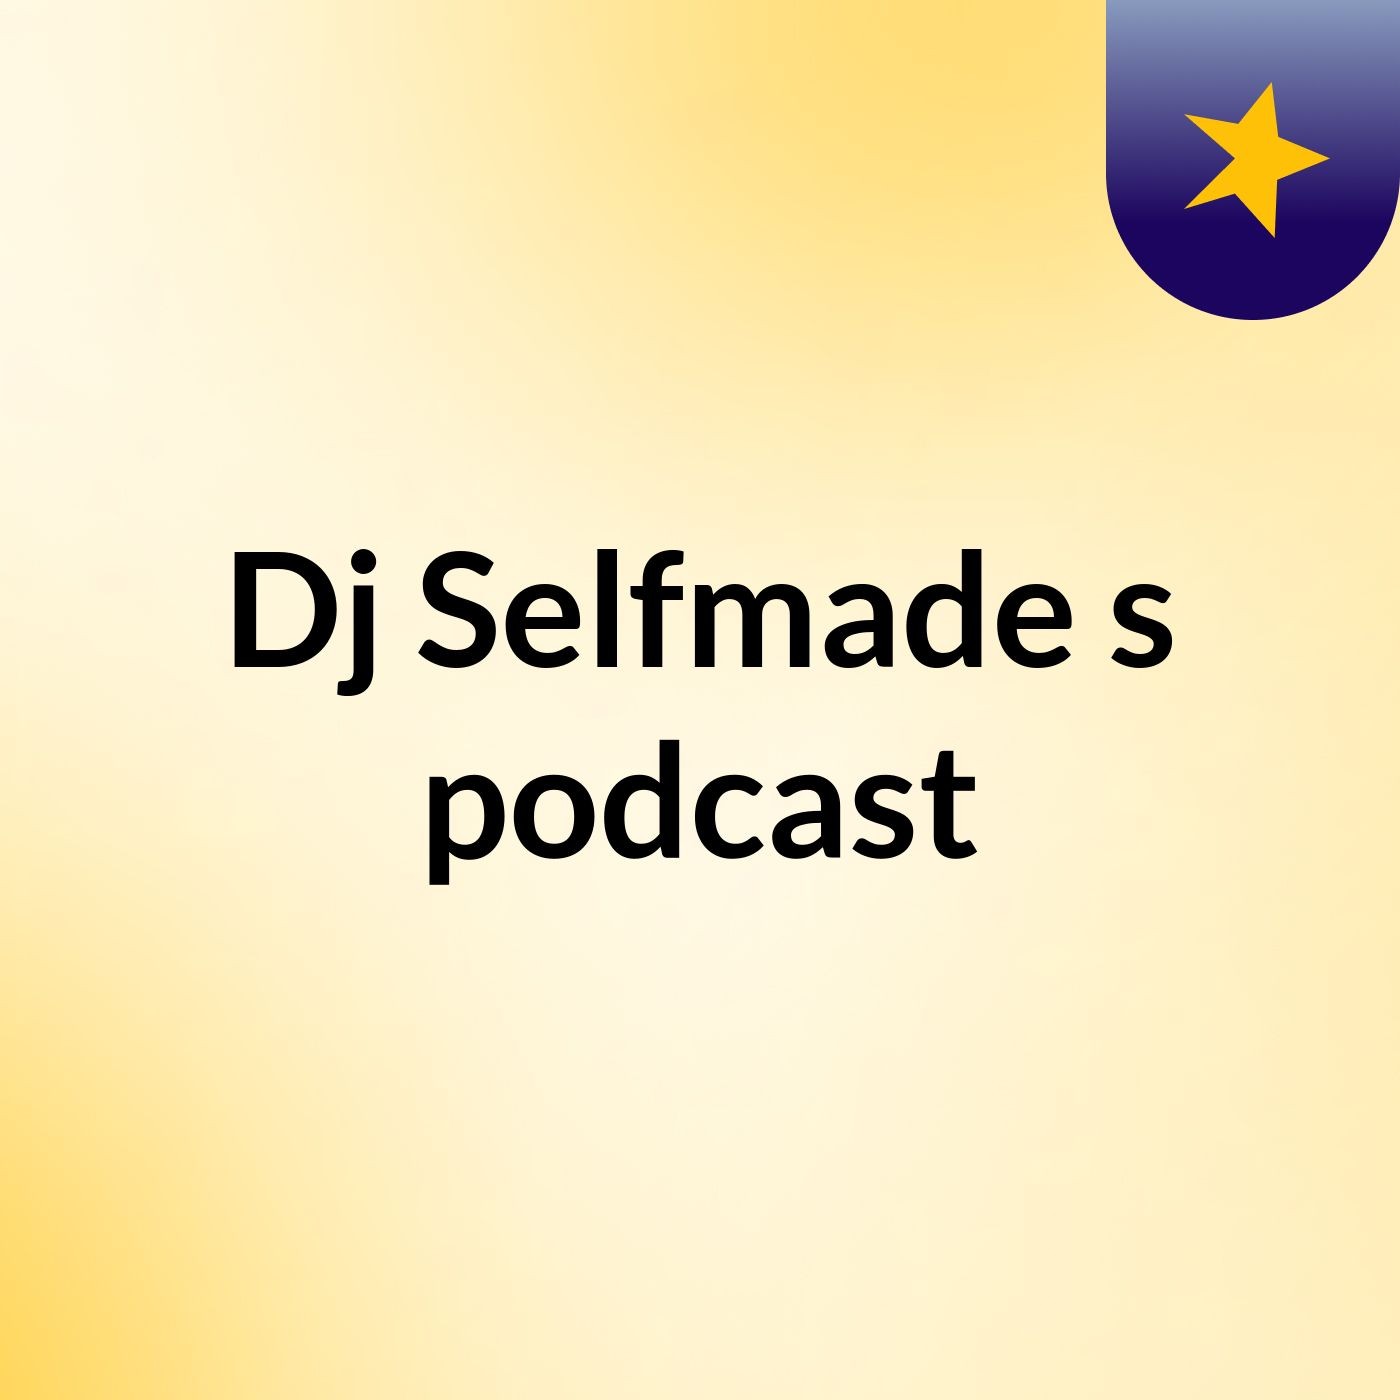 Dj Selfmade's podcast